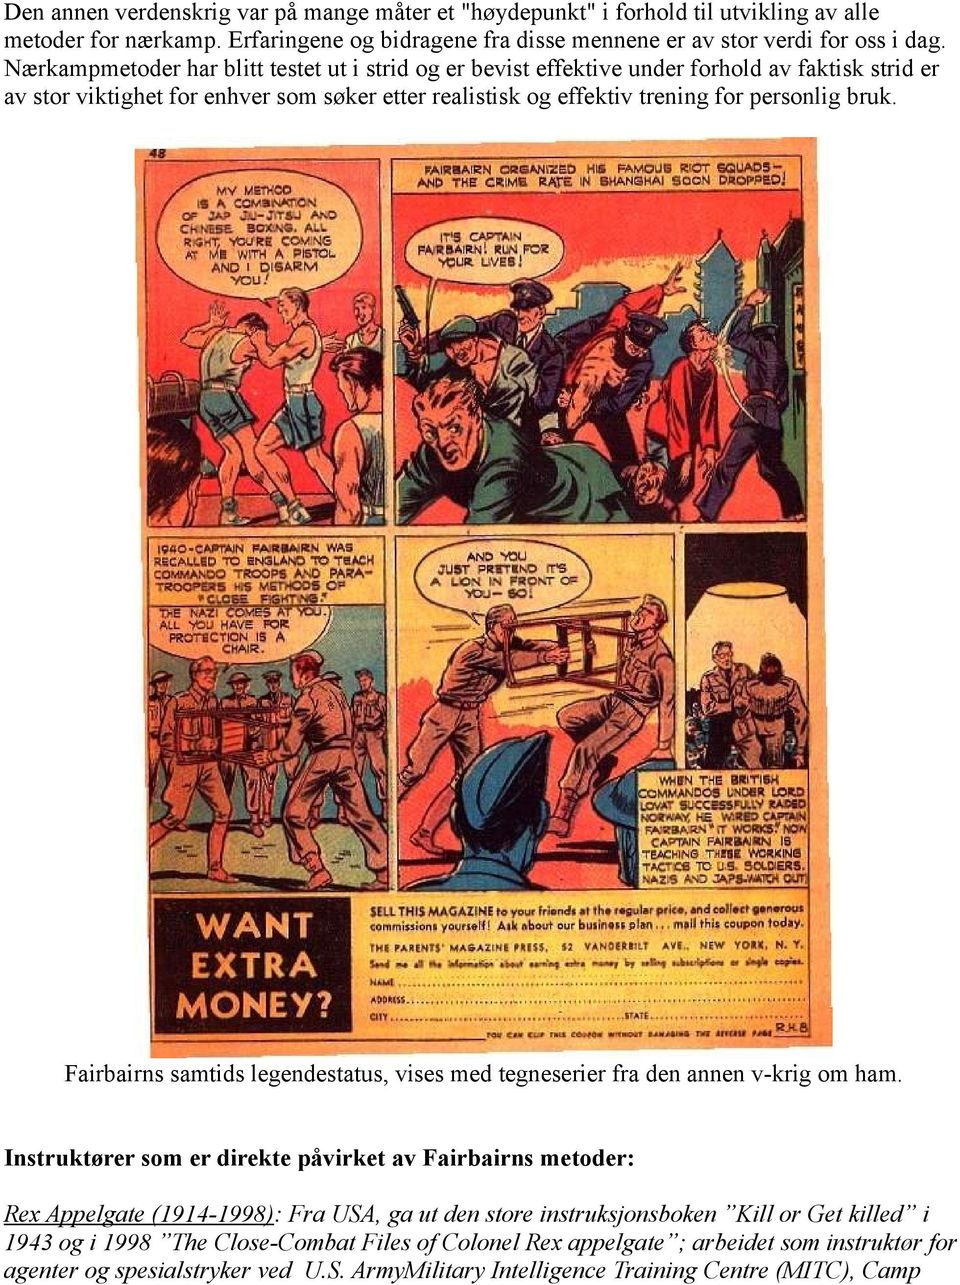 Fairbairns samtids legendestatus, vises med tegneserier fra den annen v-krig om ham.